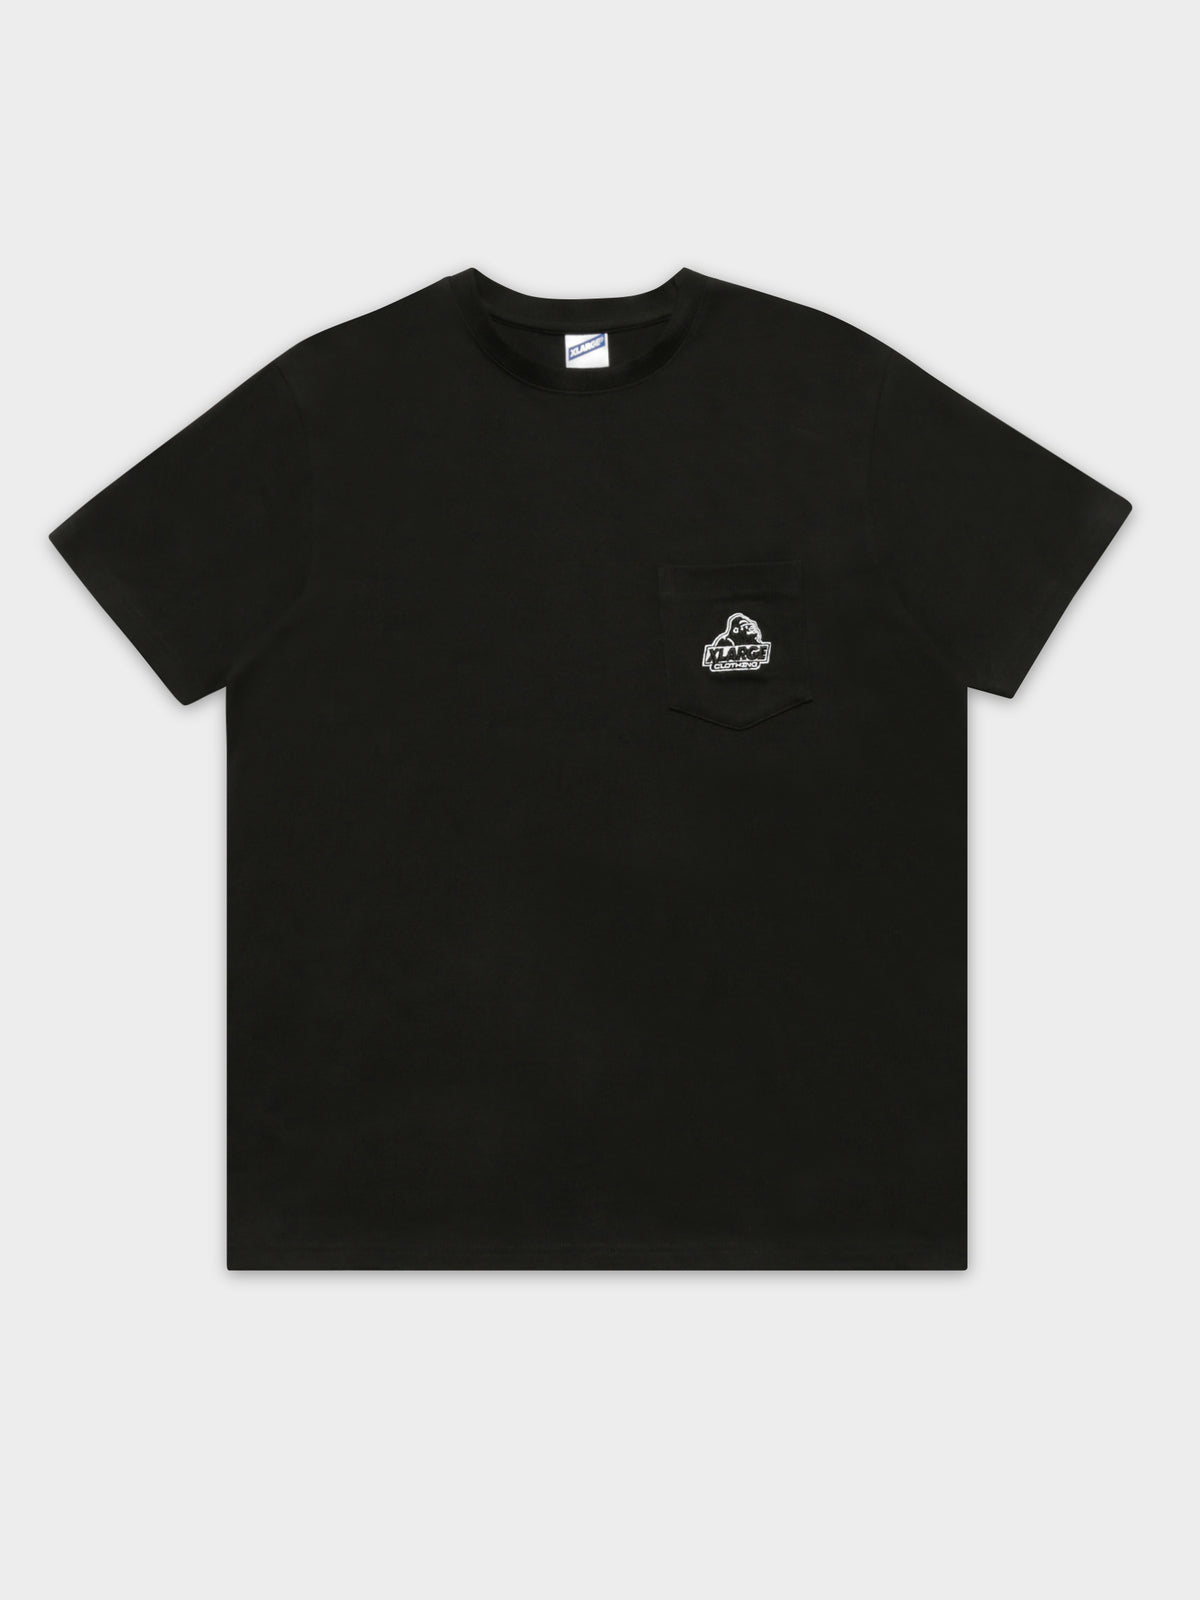 91 Slanted Pocket T-Shirt in Black